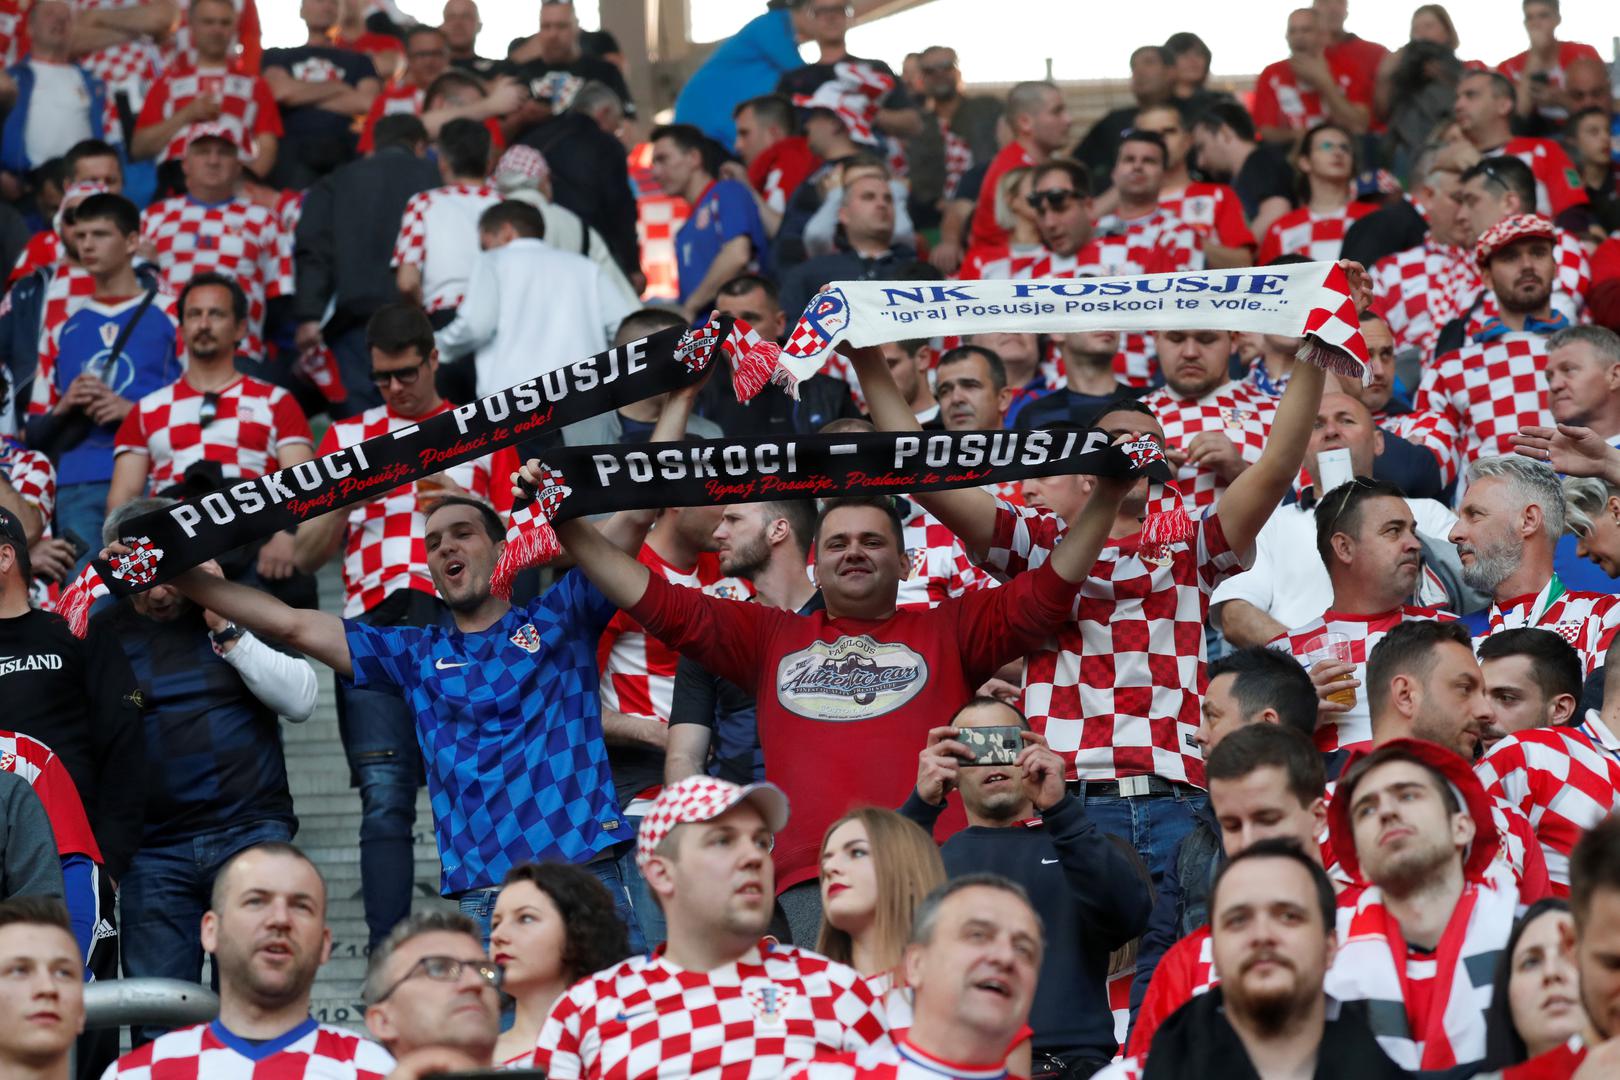 Stadion prima oko 22 tisuće ljudi, a na tribinama je 1200 hrvatskih navijača